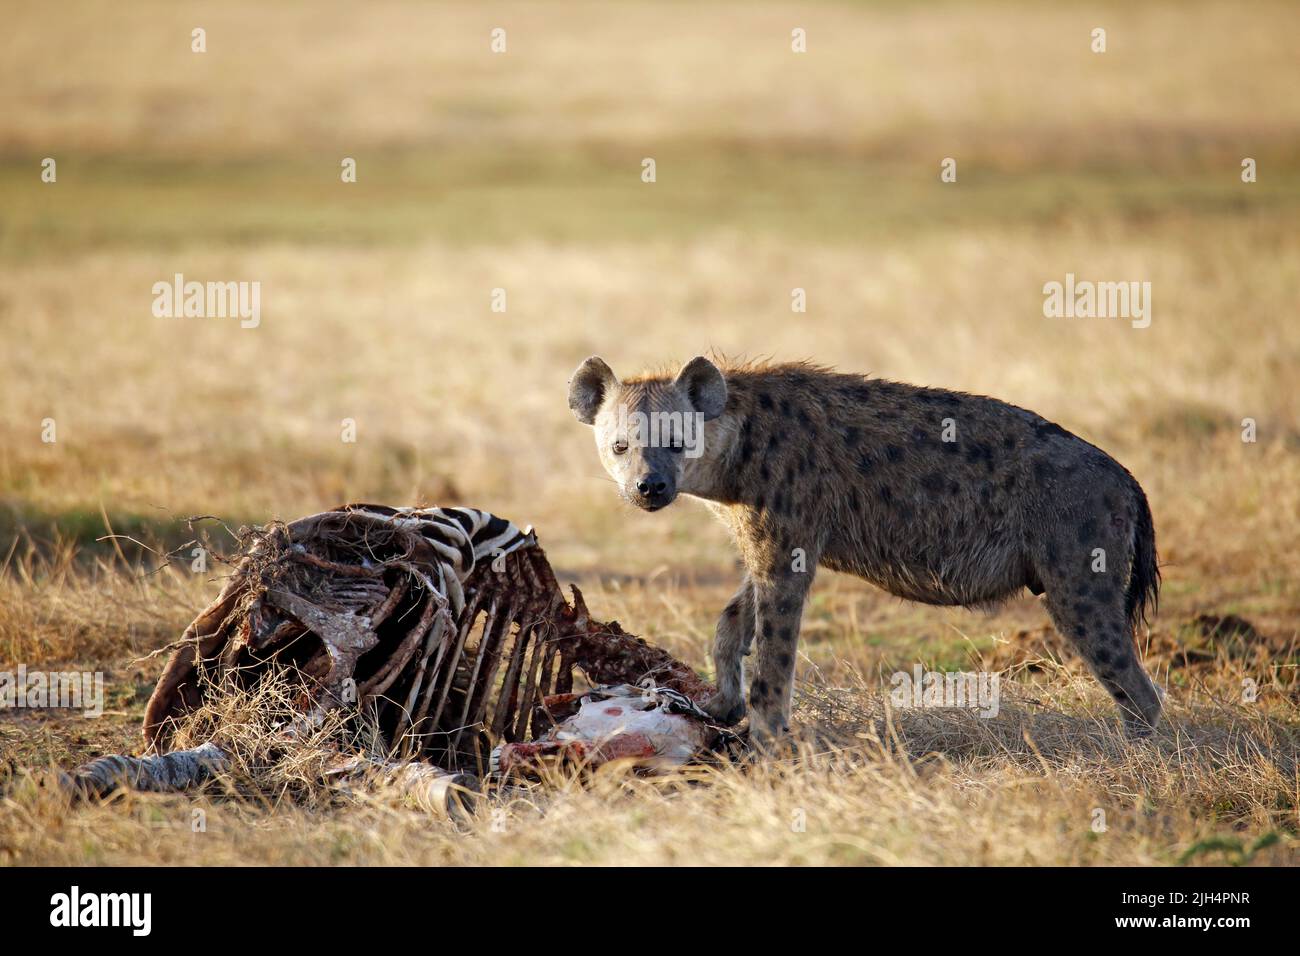 Spotted Hyena (Crocuta crocuta) with Zebra Carcass. Amboseli, Kenya Stock Photo